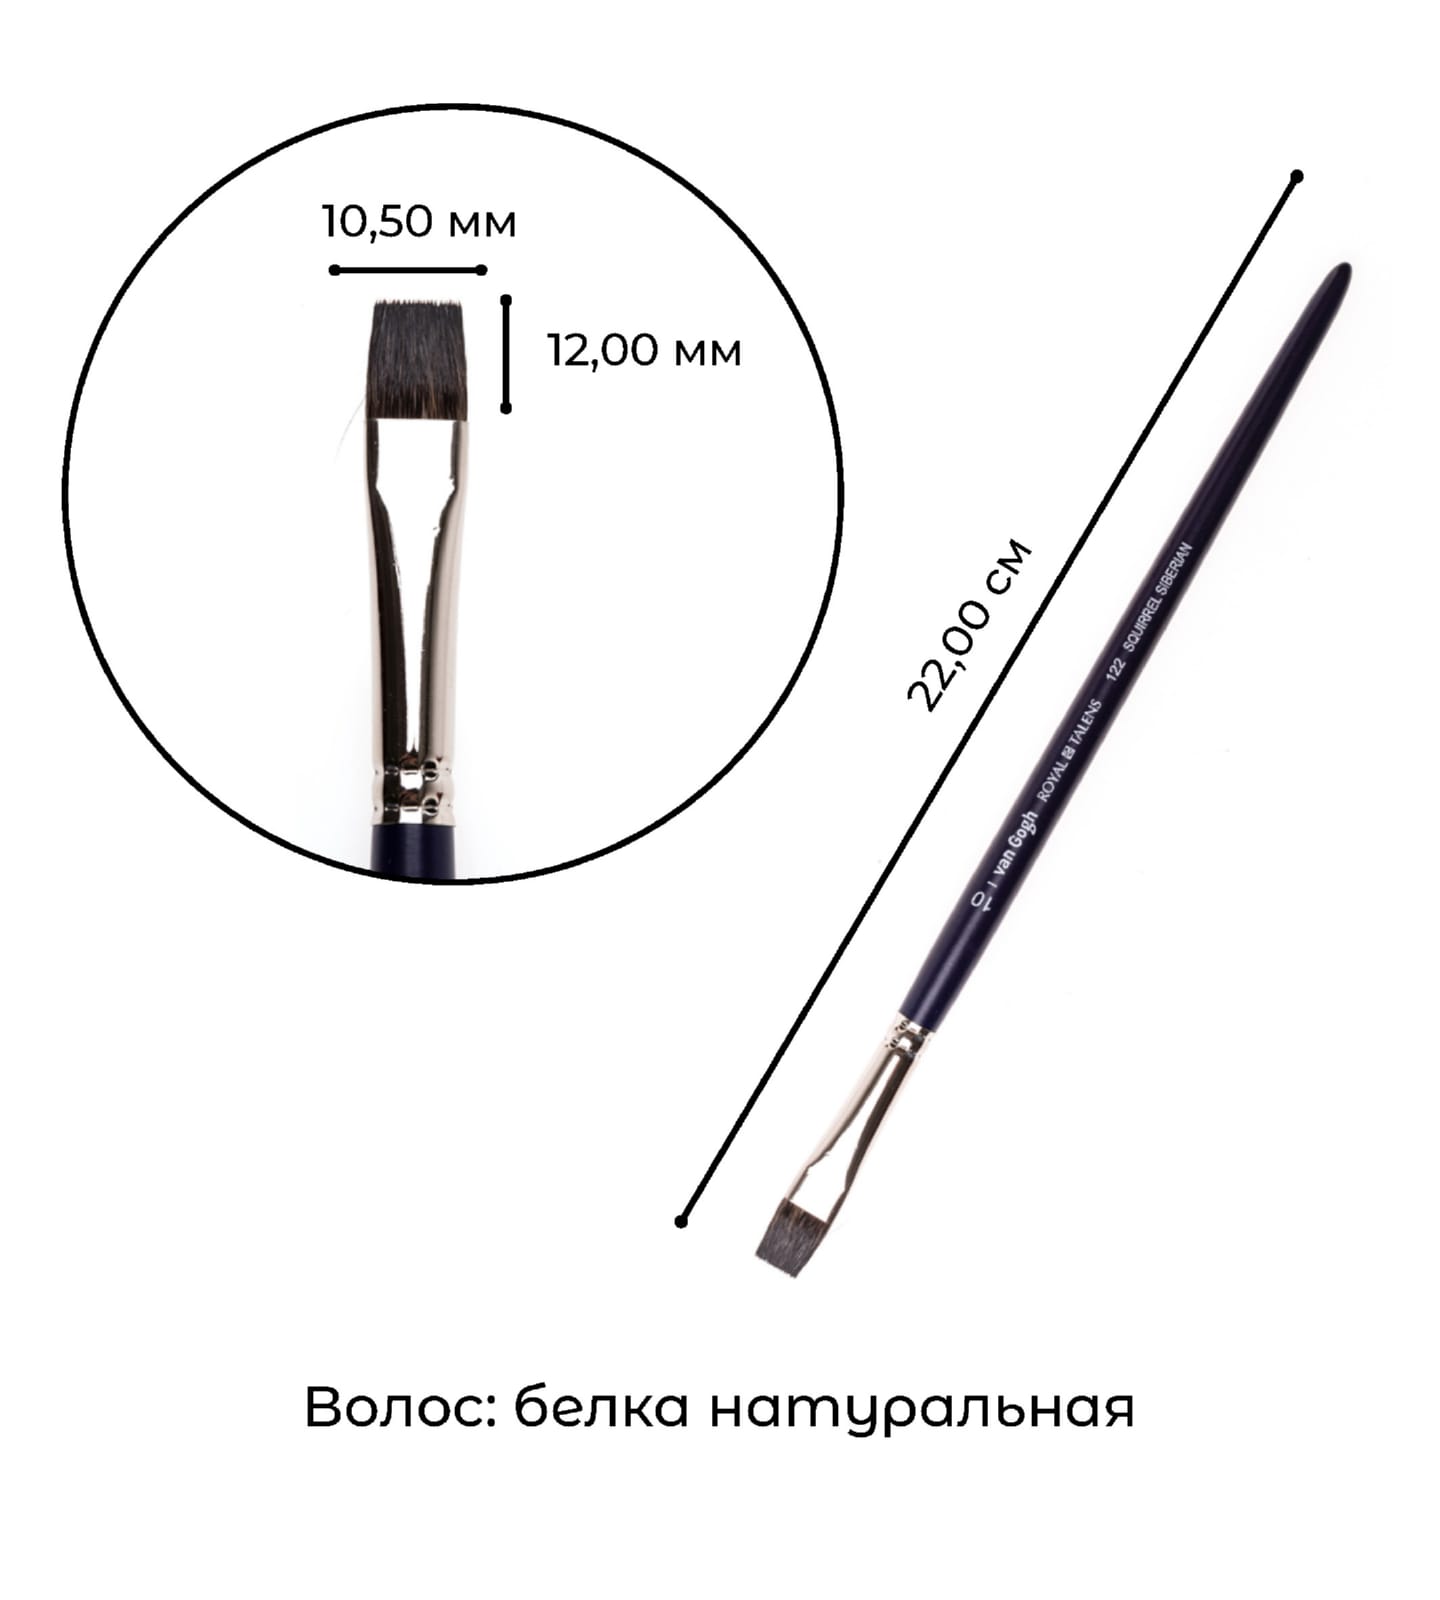 Кисть для акварели Van Gogh 122 белка сибирская плоская ручка короткая 5 шт/упак 13 размеров в ассортименте